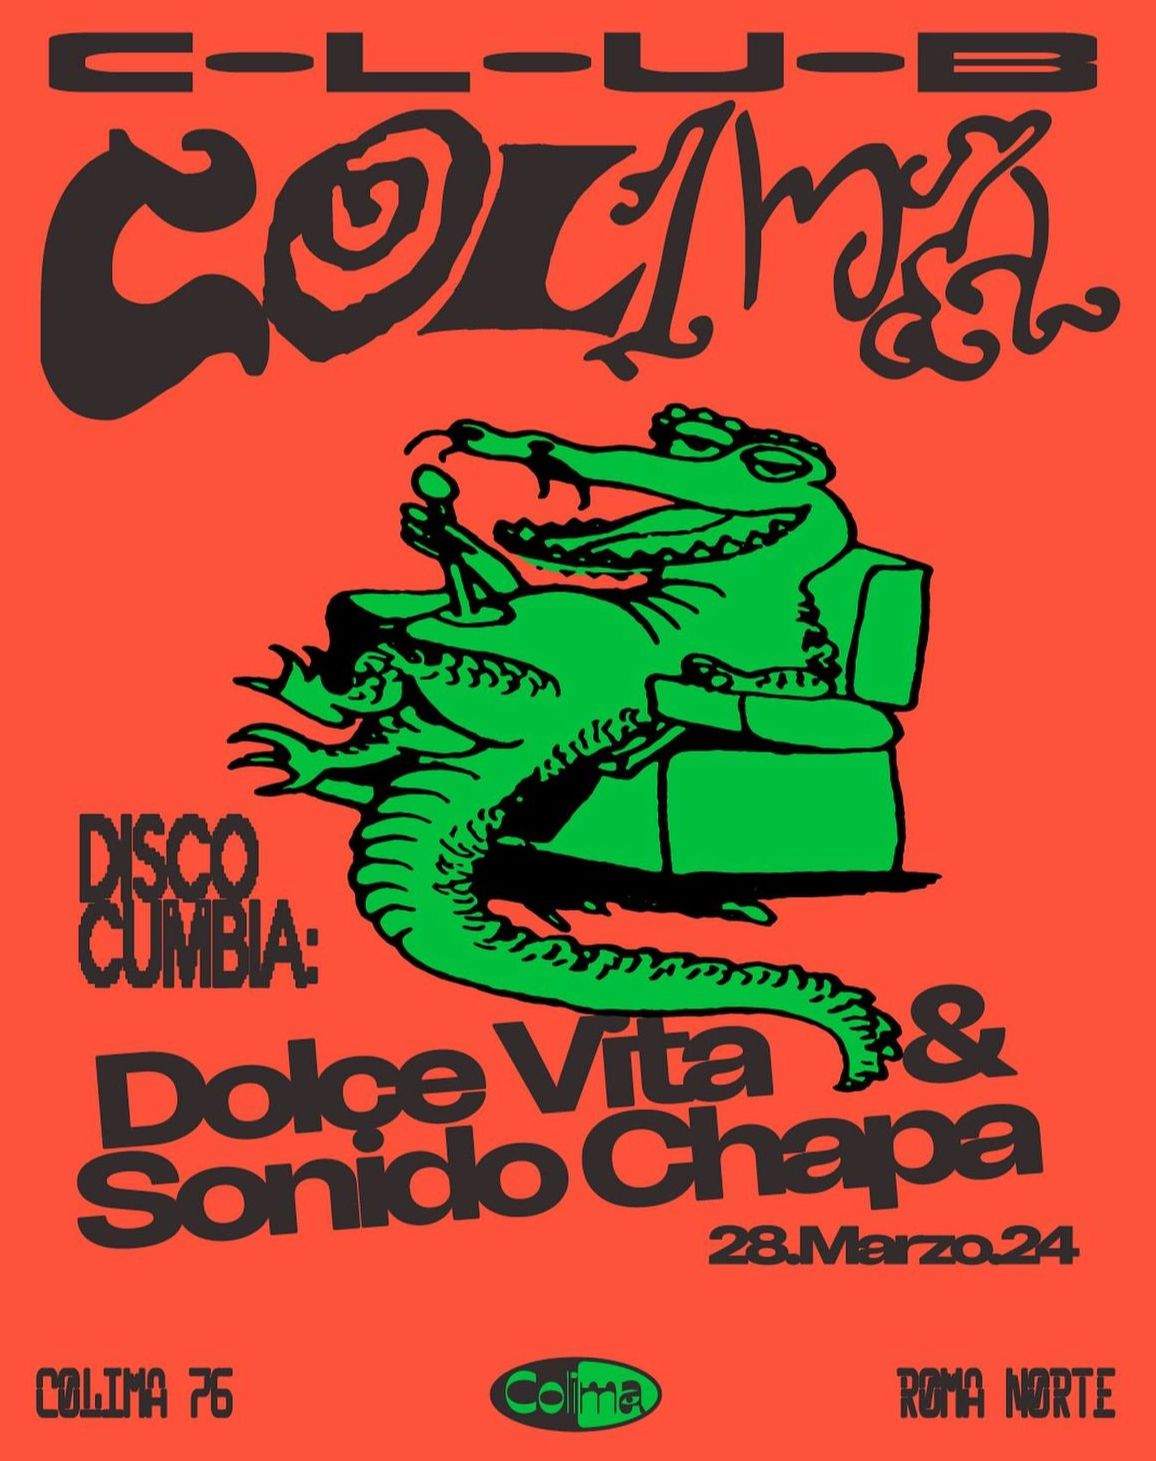 Disco Cumbia: Dolce Vita & Sonido Chapa - Página frontal